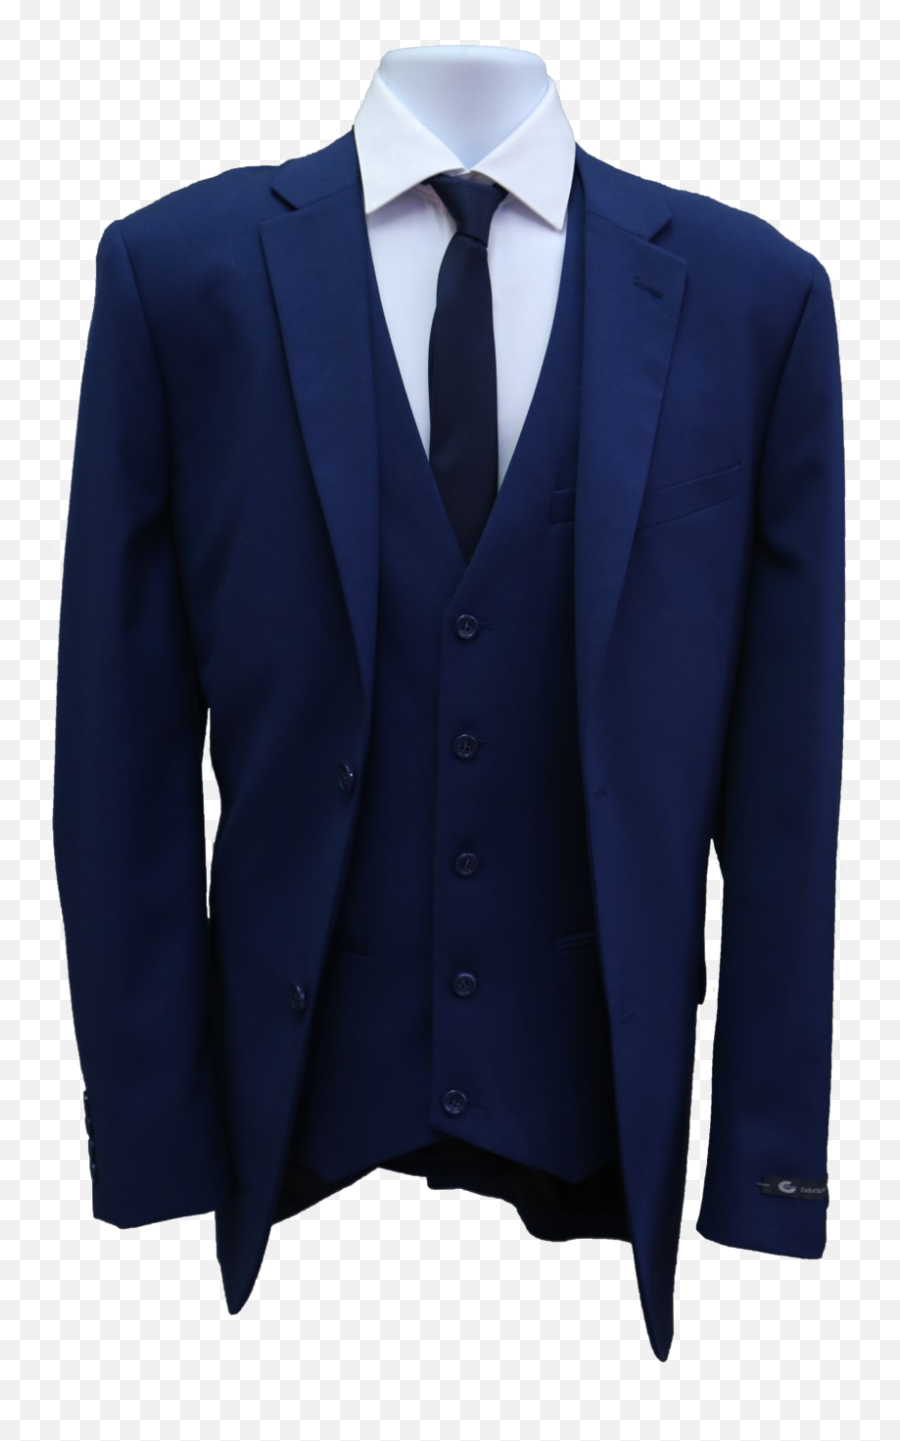 Transparent Background Suit Png Clipart - Blue Suit And Tie Transparent Background Emoji,Suit Clipart